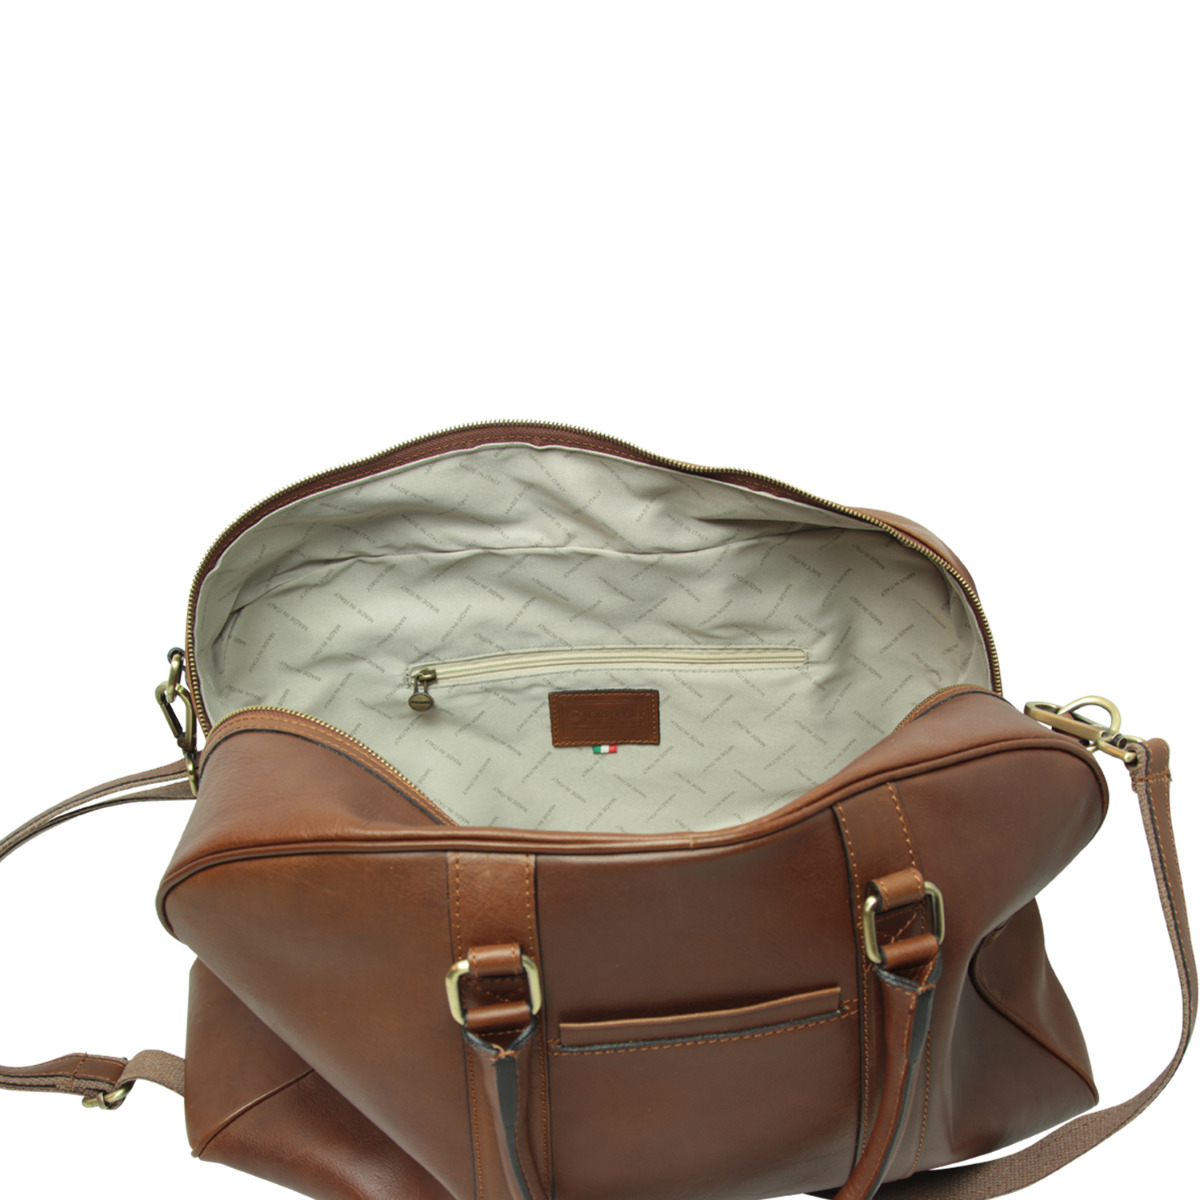 Soft Calfskin Leather Travel Bag – chestnut|030561CA|Old Angler Firenze